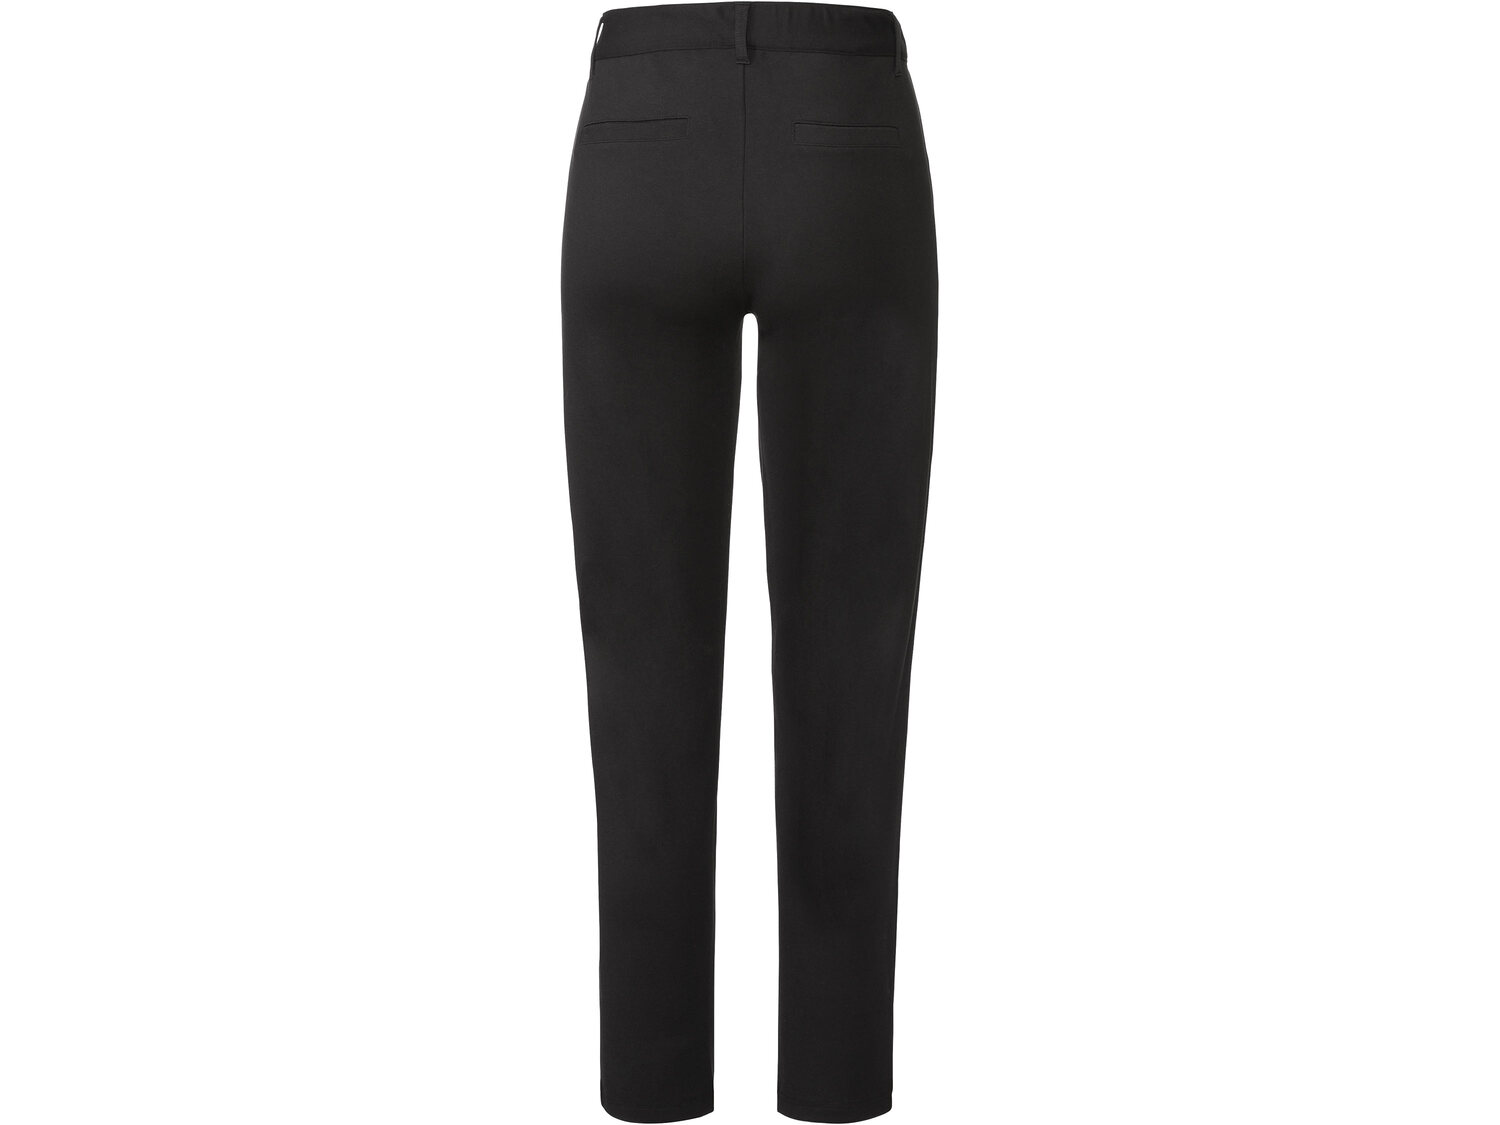 Eleganckie spodnie z wiskozą Oeko Tex, cena 39,99 PLN 
- miękki, ładnie układający ...